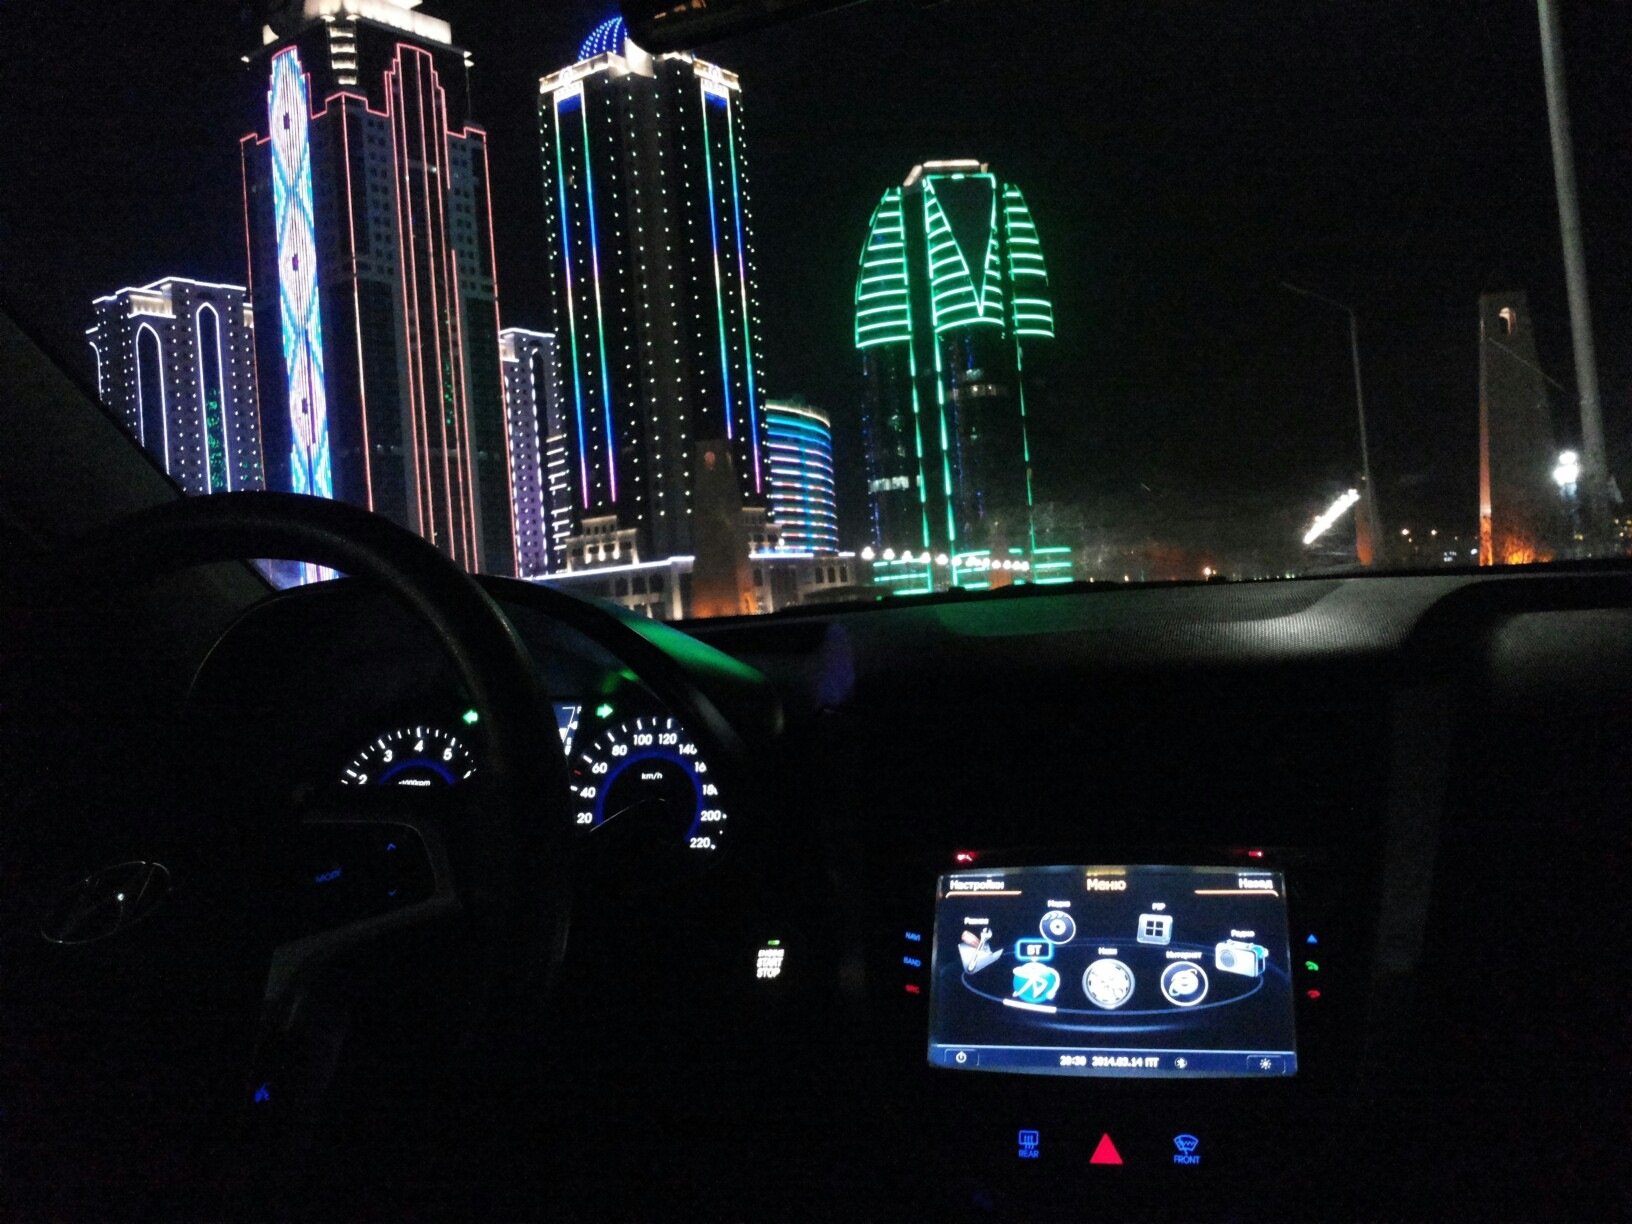 фото ночного нижнего новгорода из машины